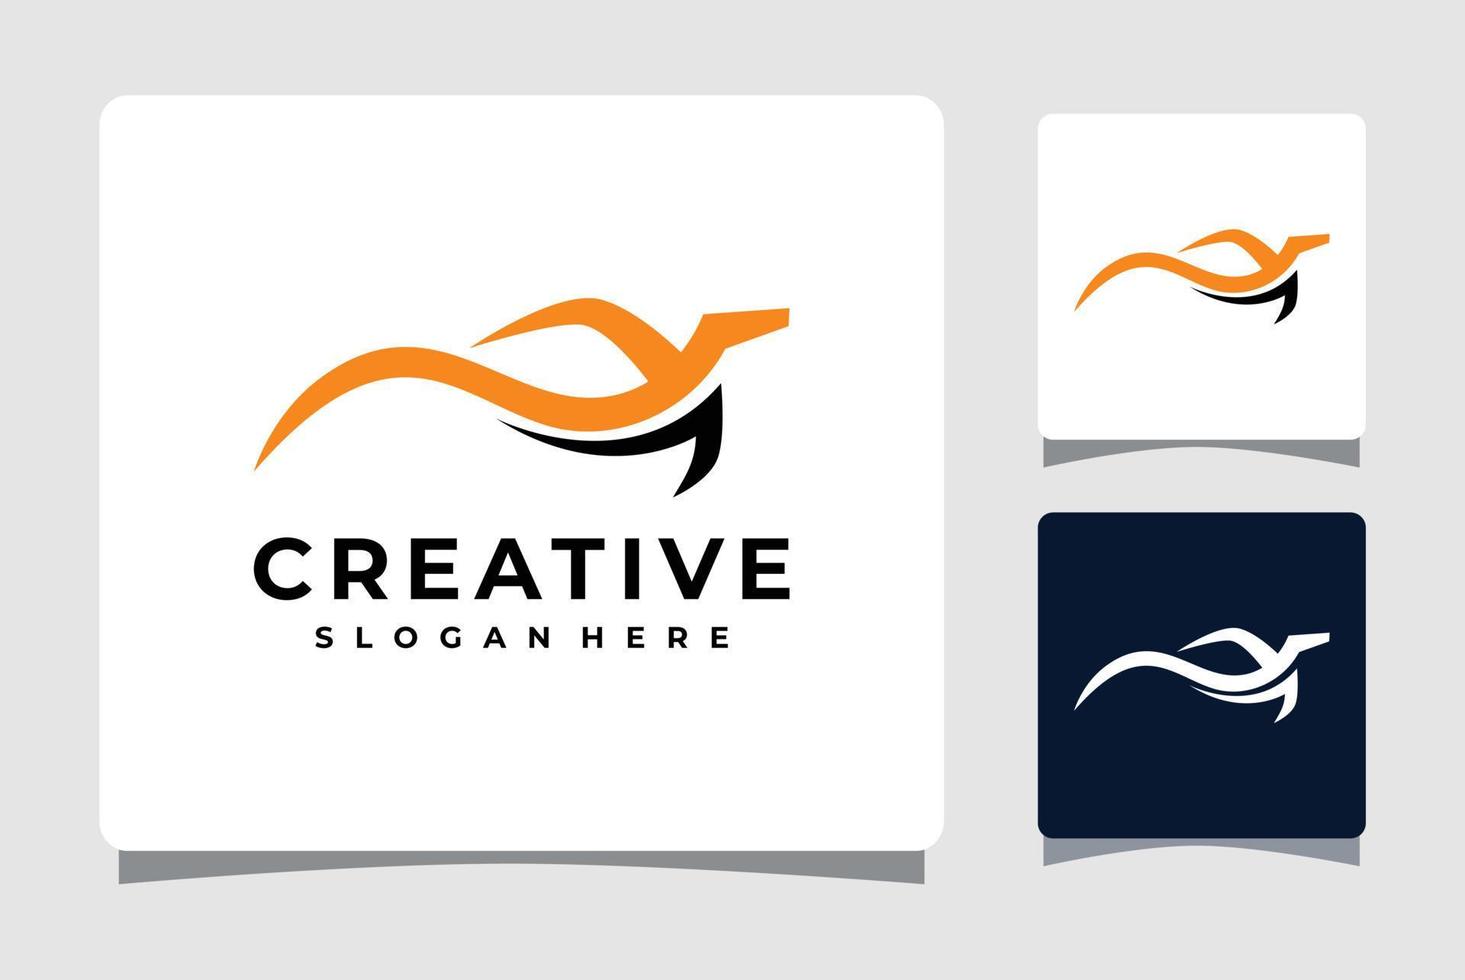 kreative, elegante Inspiration für das Design von Autosport-Logo-Vorlagen vektor